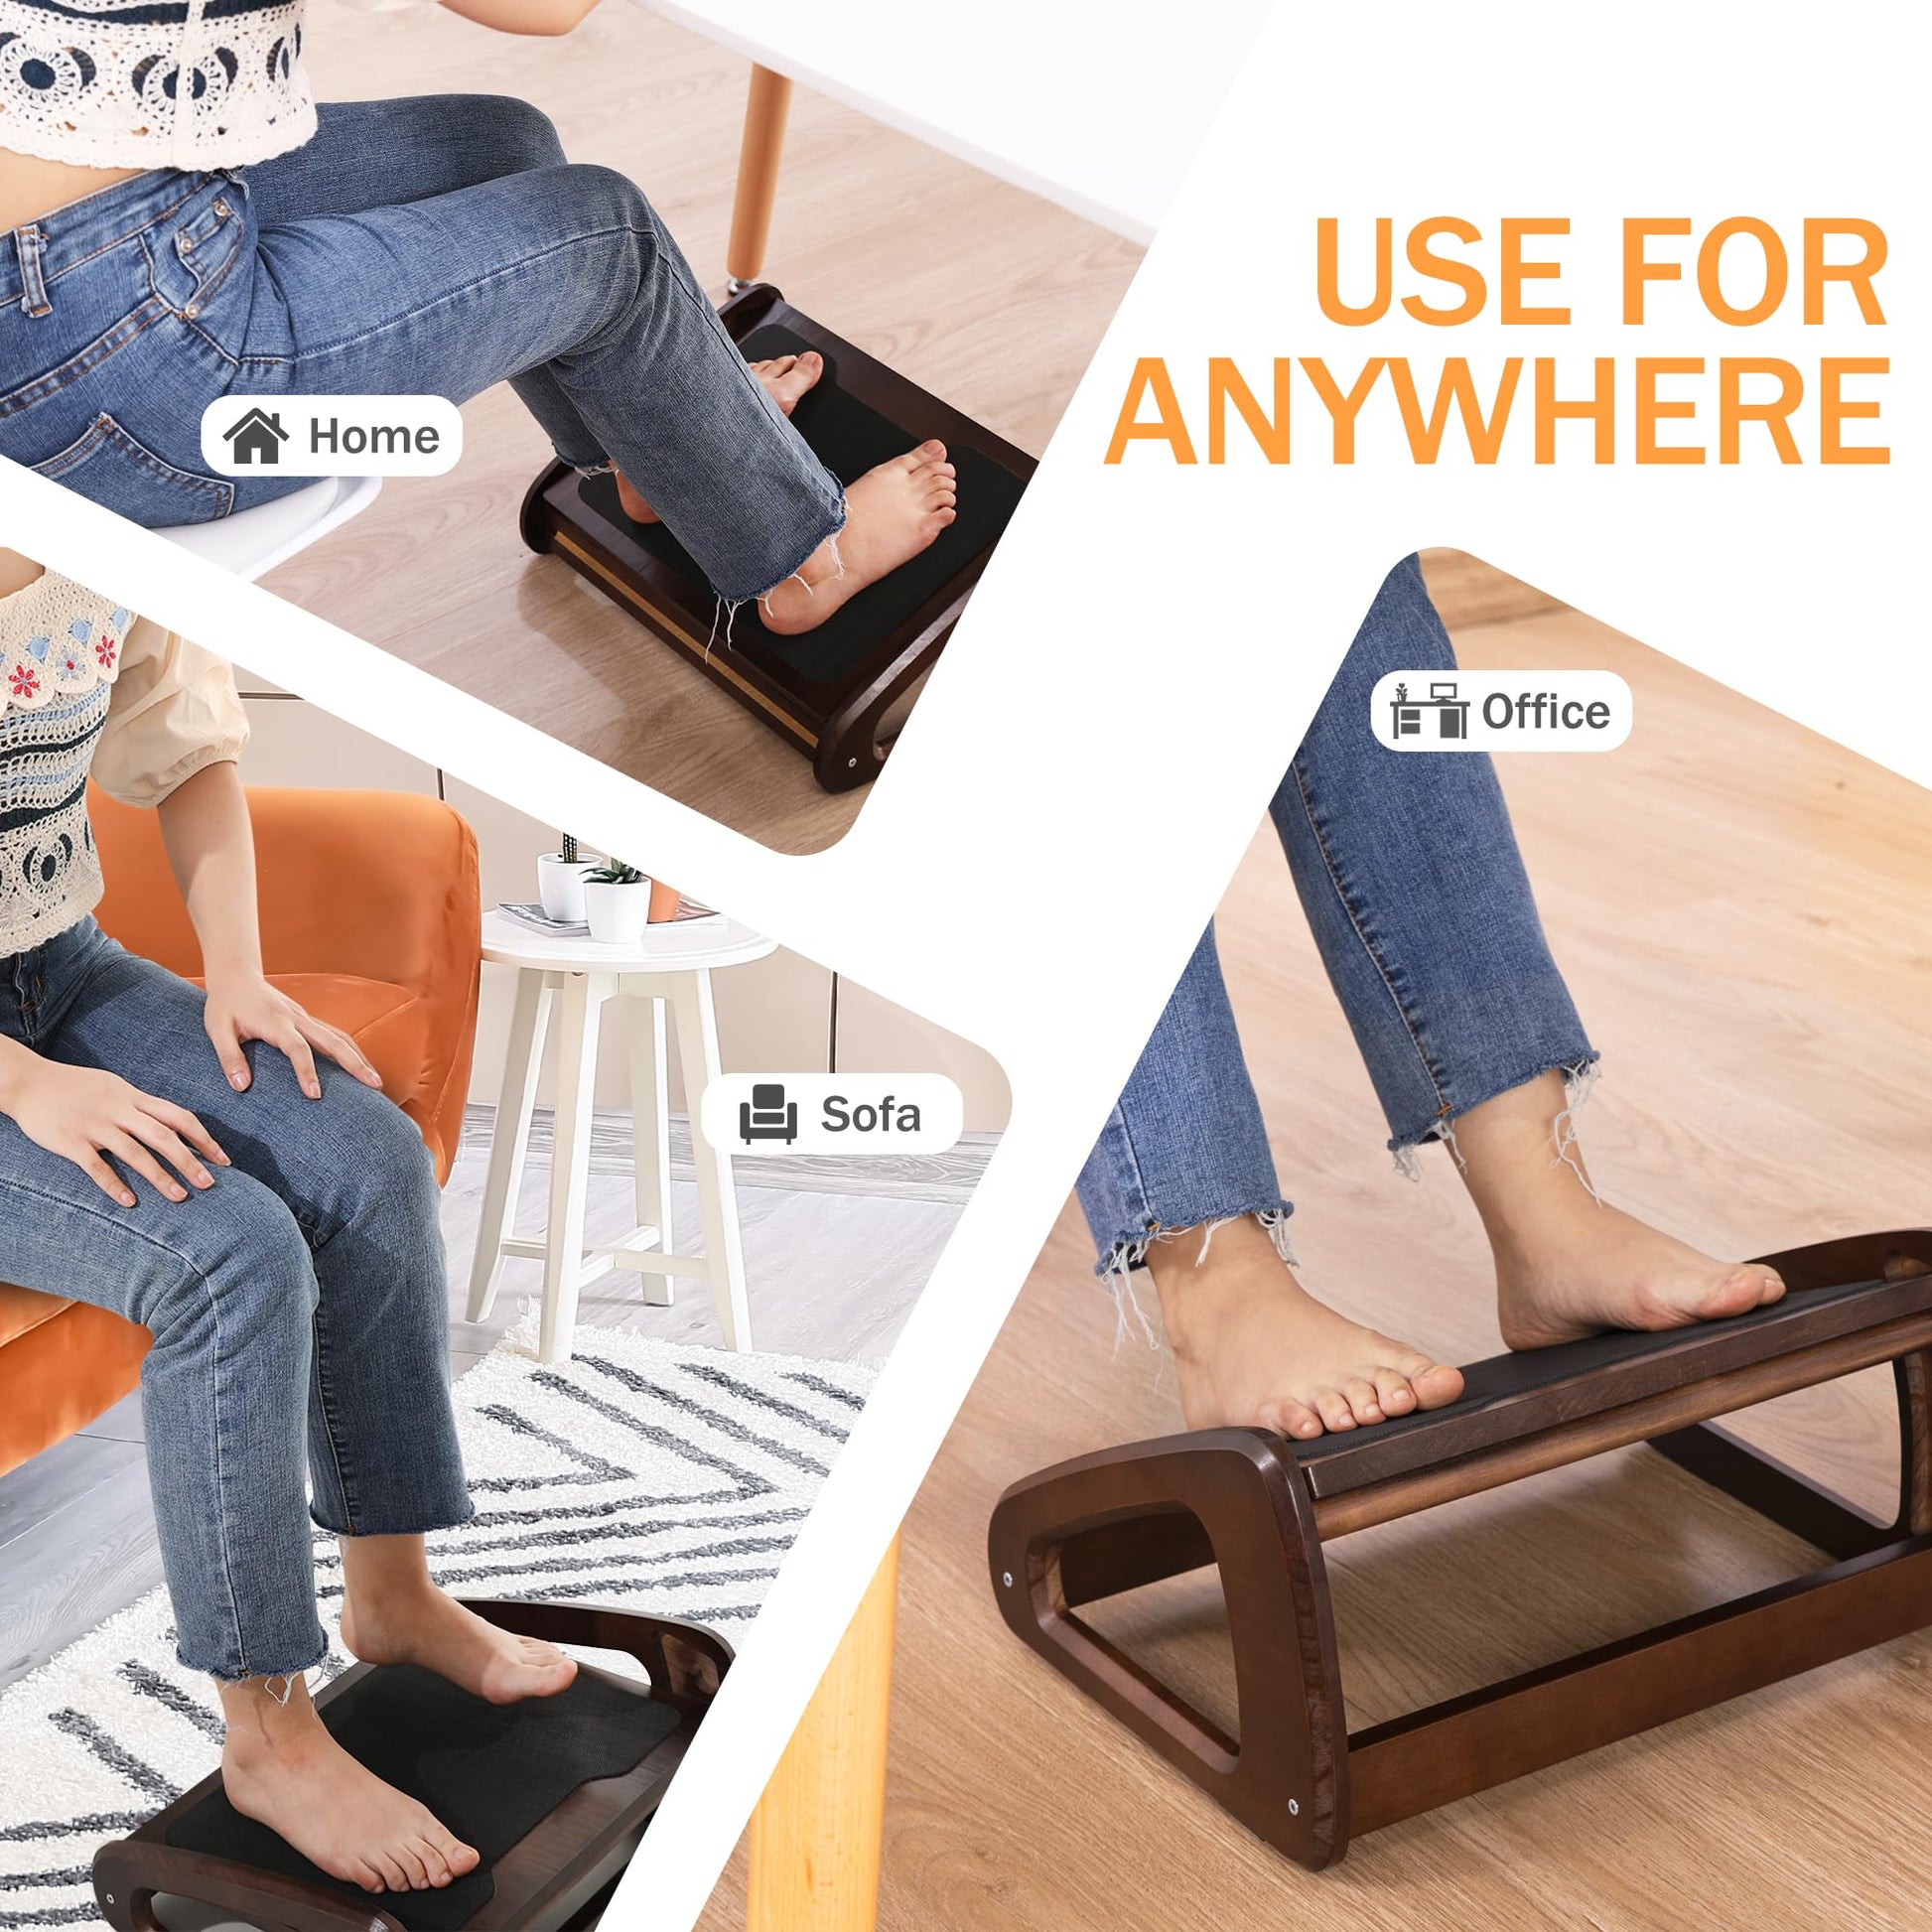 Wood Under Desk Footrest Portable Adjustable Height Step Stool Footrest  Stool Foot Rest for Bathroom Office Worker Home